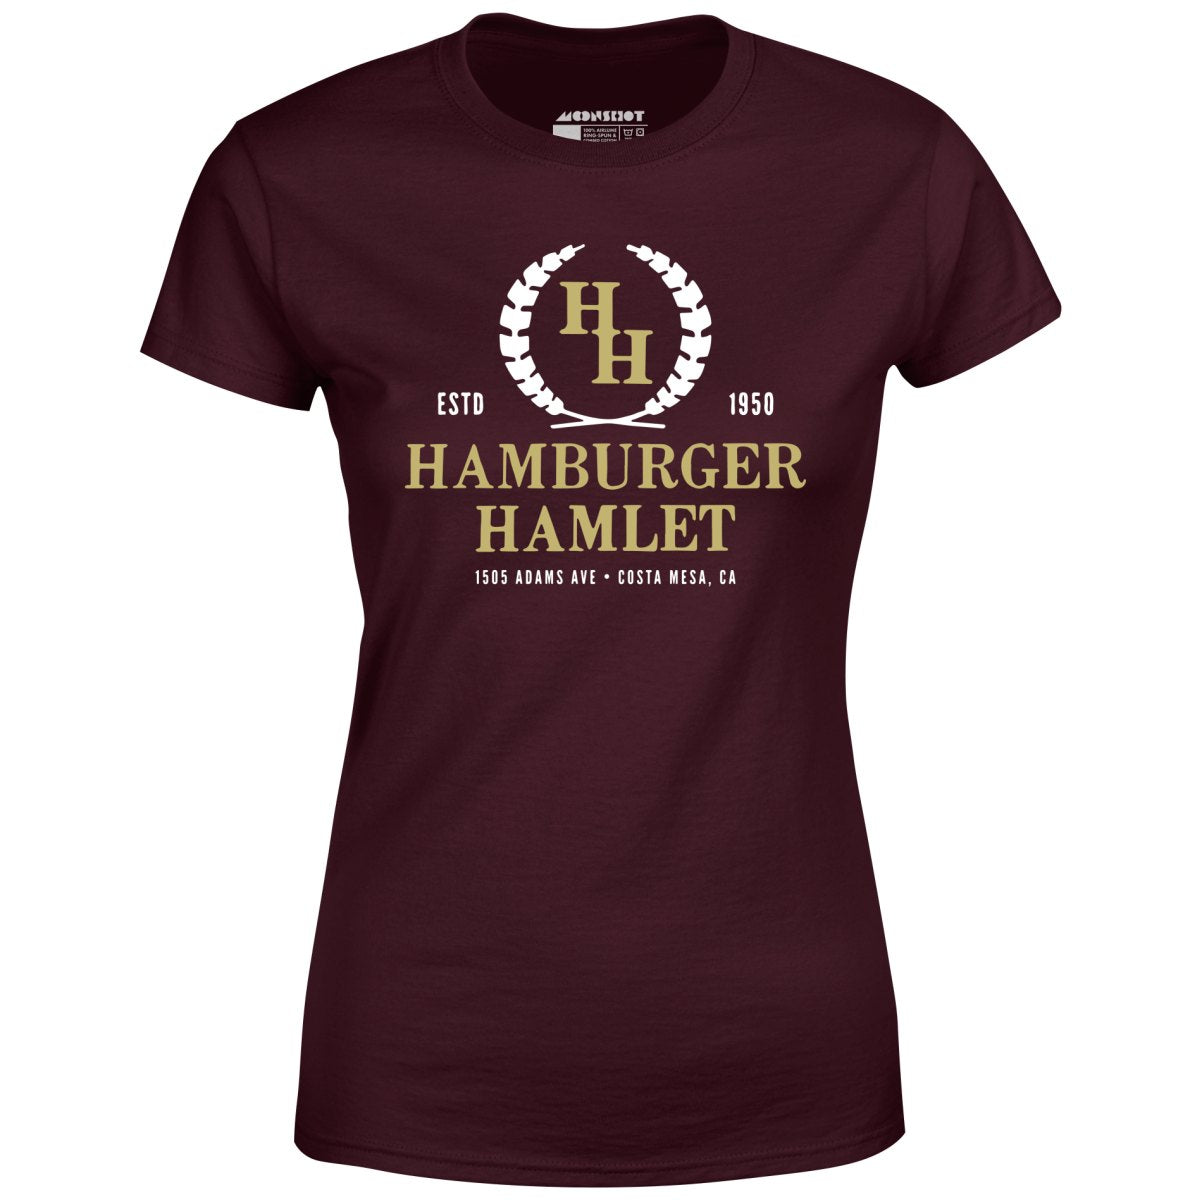 Hamburger Hamlet - Costa Mesa, CA - Vintage Restaurant - Women's T-Shirt